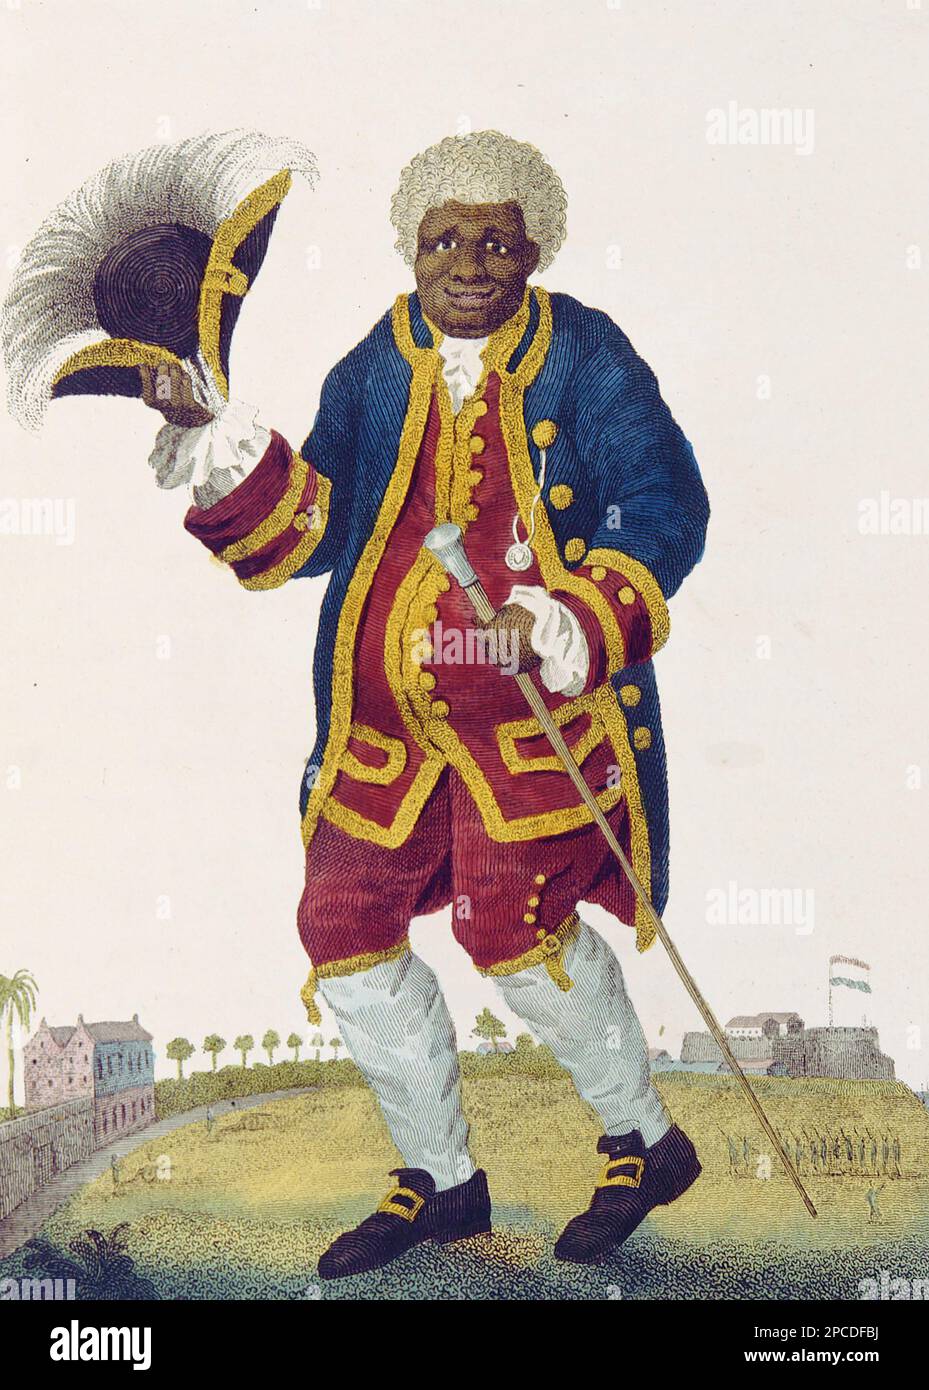 GRAMAN KWASI (1692-1787) Surinamesischer Botaniker und Sklavenhändler für die niederländische Kolonie Surinam. Stockfoto